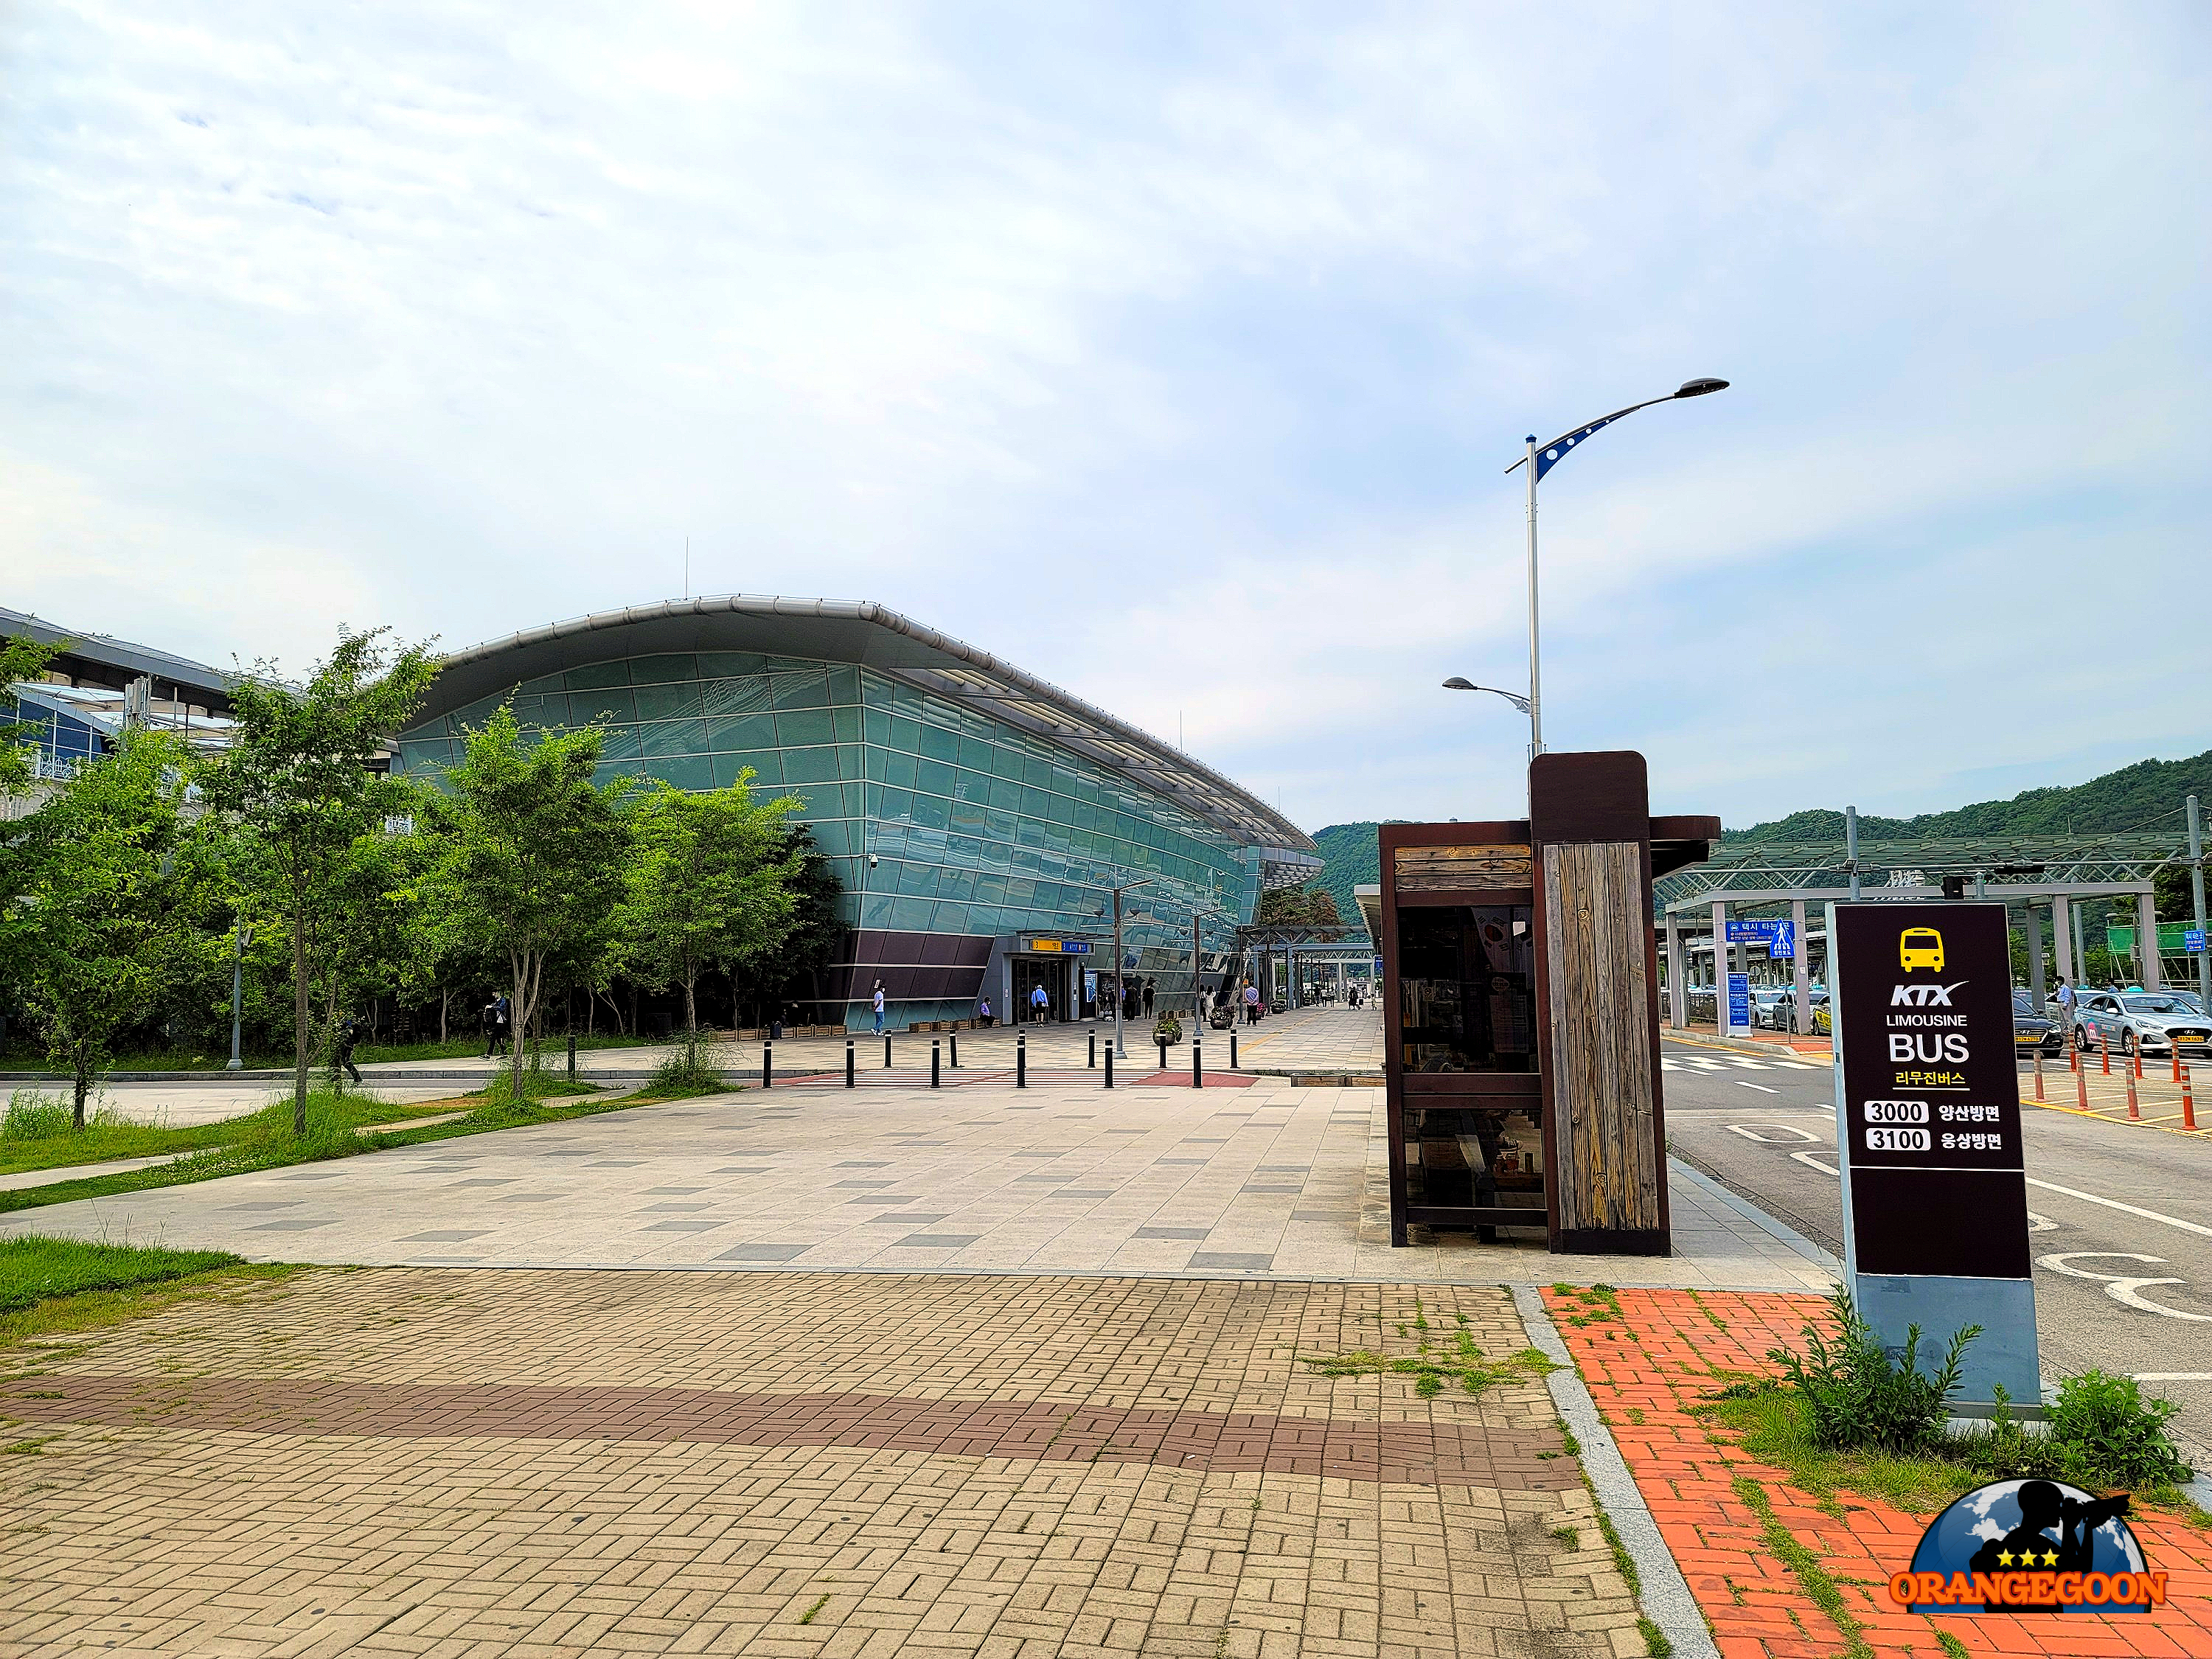 (울산 울주 / 울산역 - 통도사) 통도사도 멀고, 울산도 멀고. 하지만 묘하게도 승객이 많은 울산의 대표 기차역 蔚山驛 Ulsan Railway Station